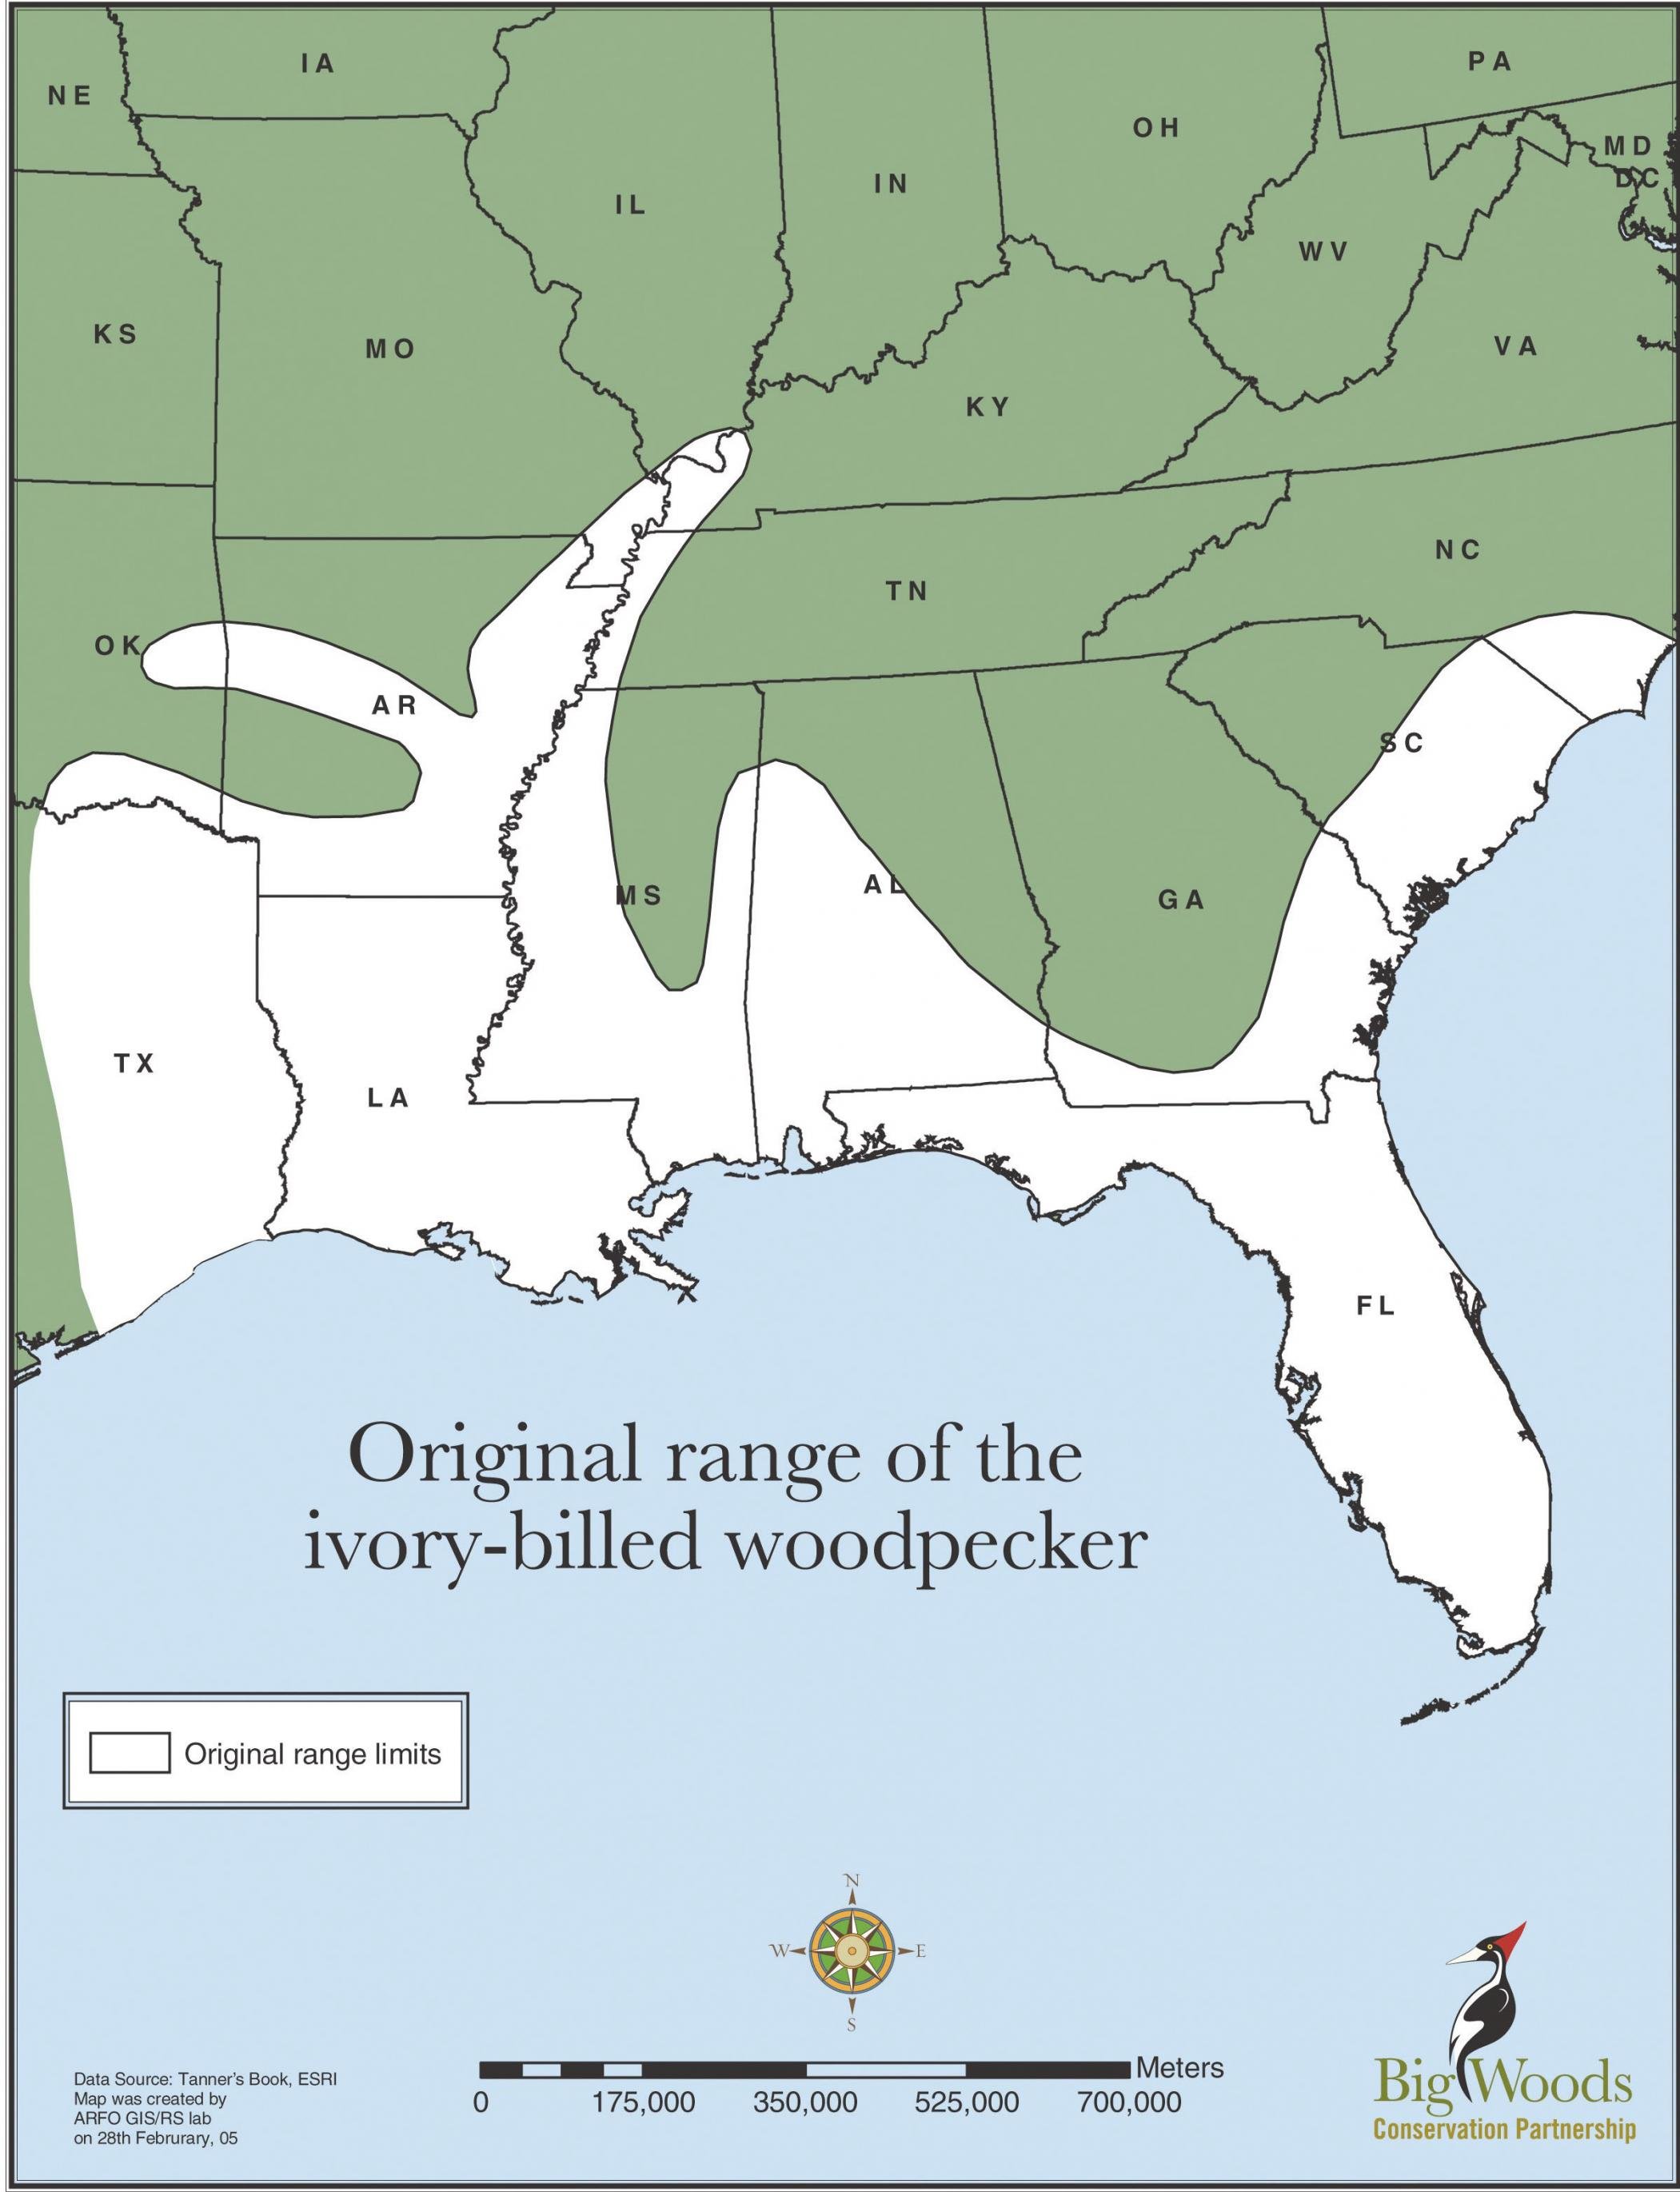 Karte der USA-Südstaaten mit flächiger weißer Markierung, die sich von Texas bis North Carolina erstreckt